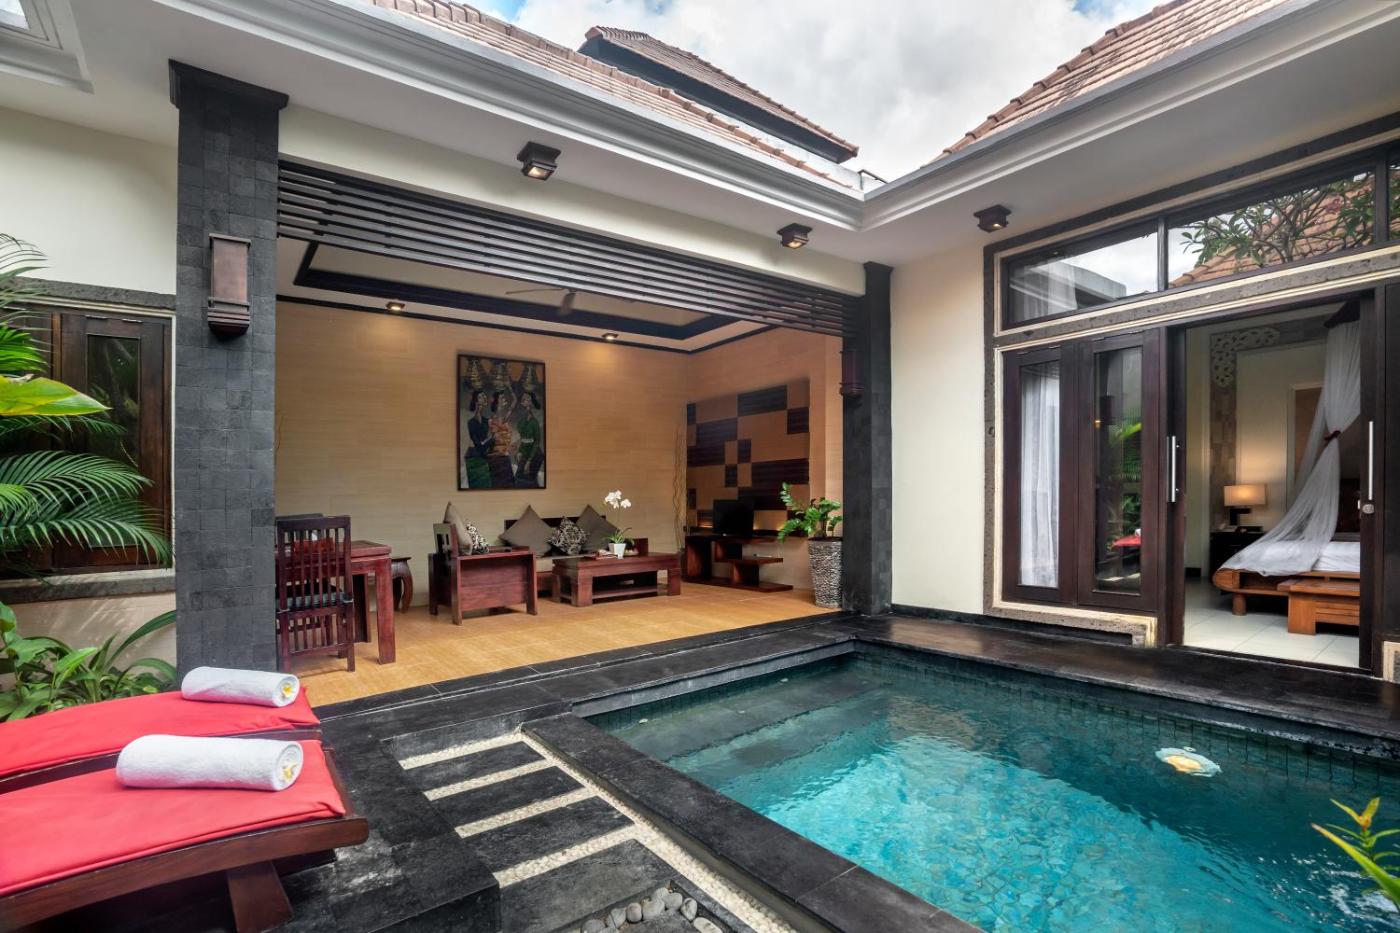 Hotel with private pool - The Bali Dream Villa Seminyak